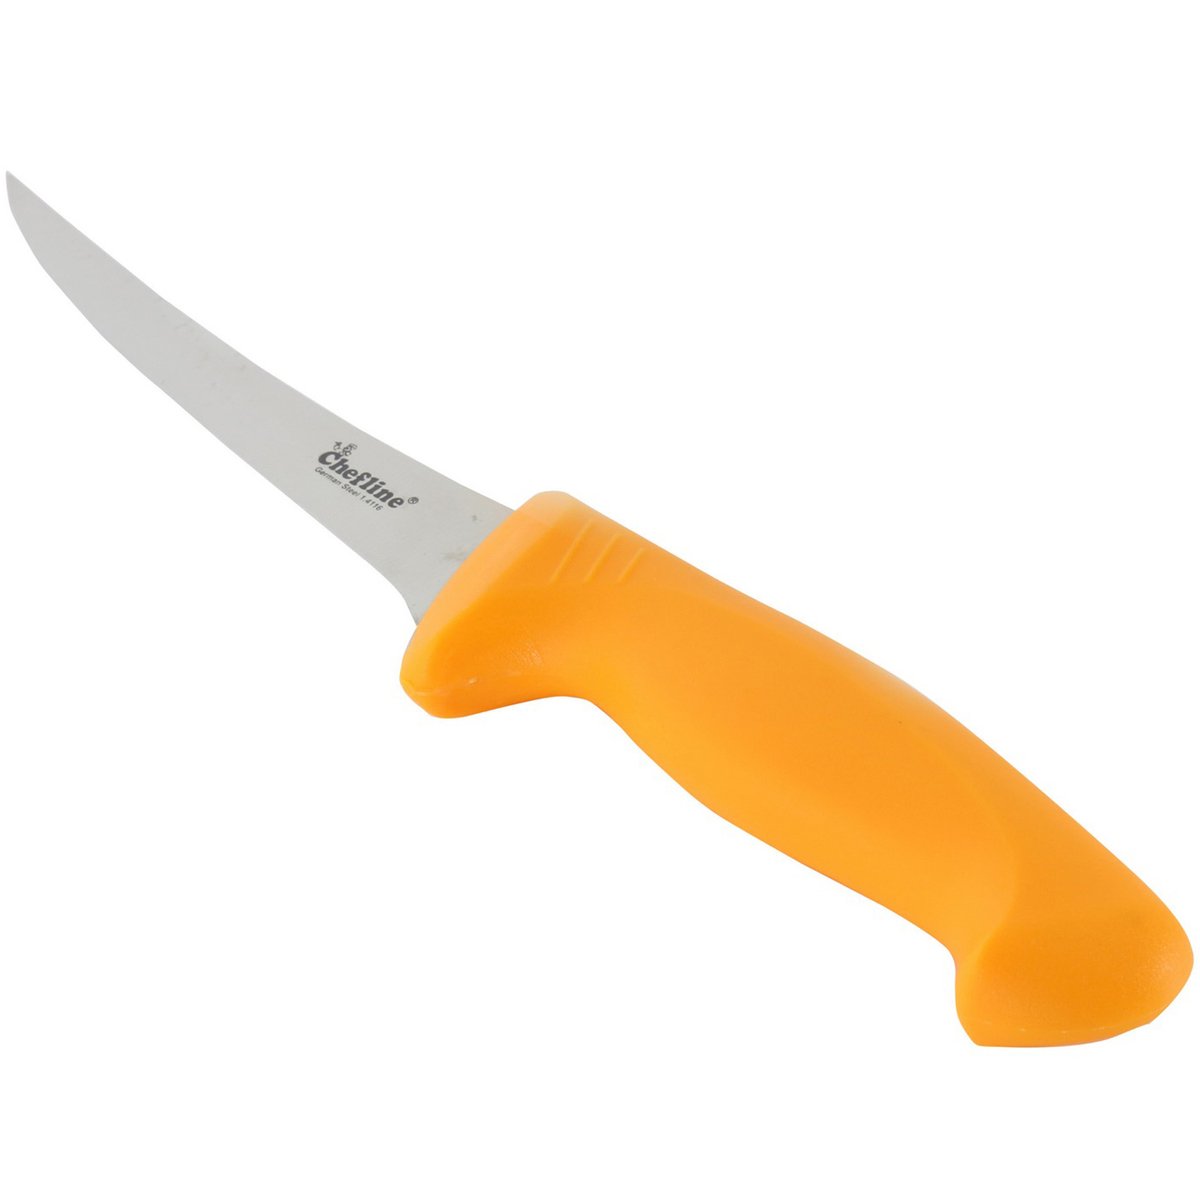 Chefline Curv Boning Knife WXSL402 6inch